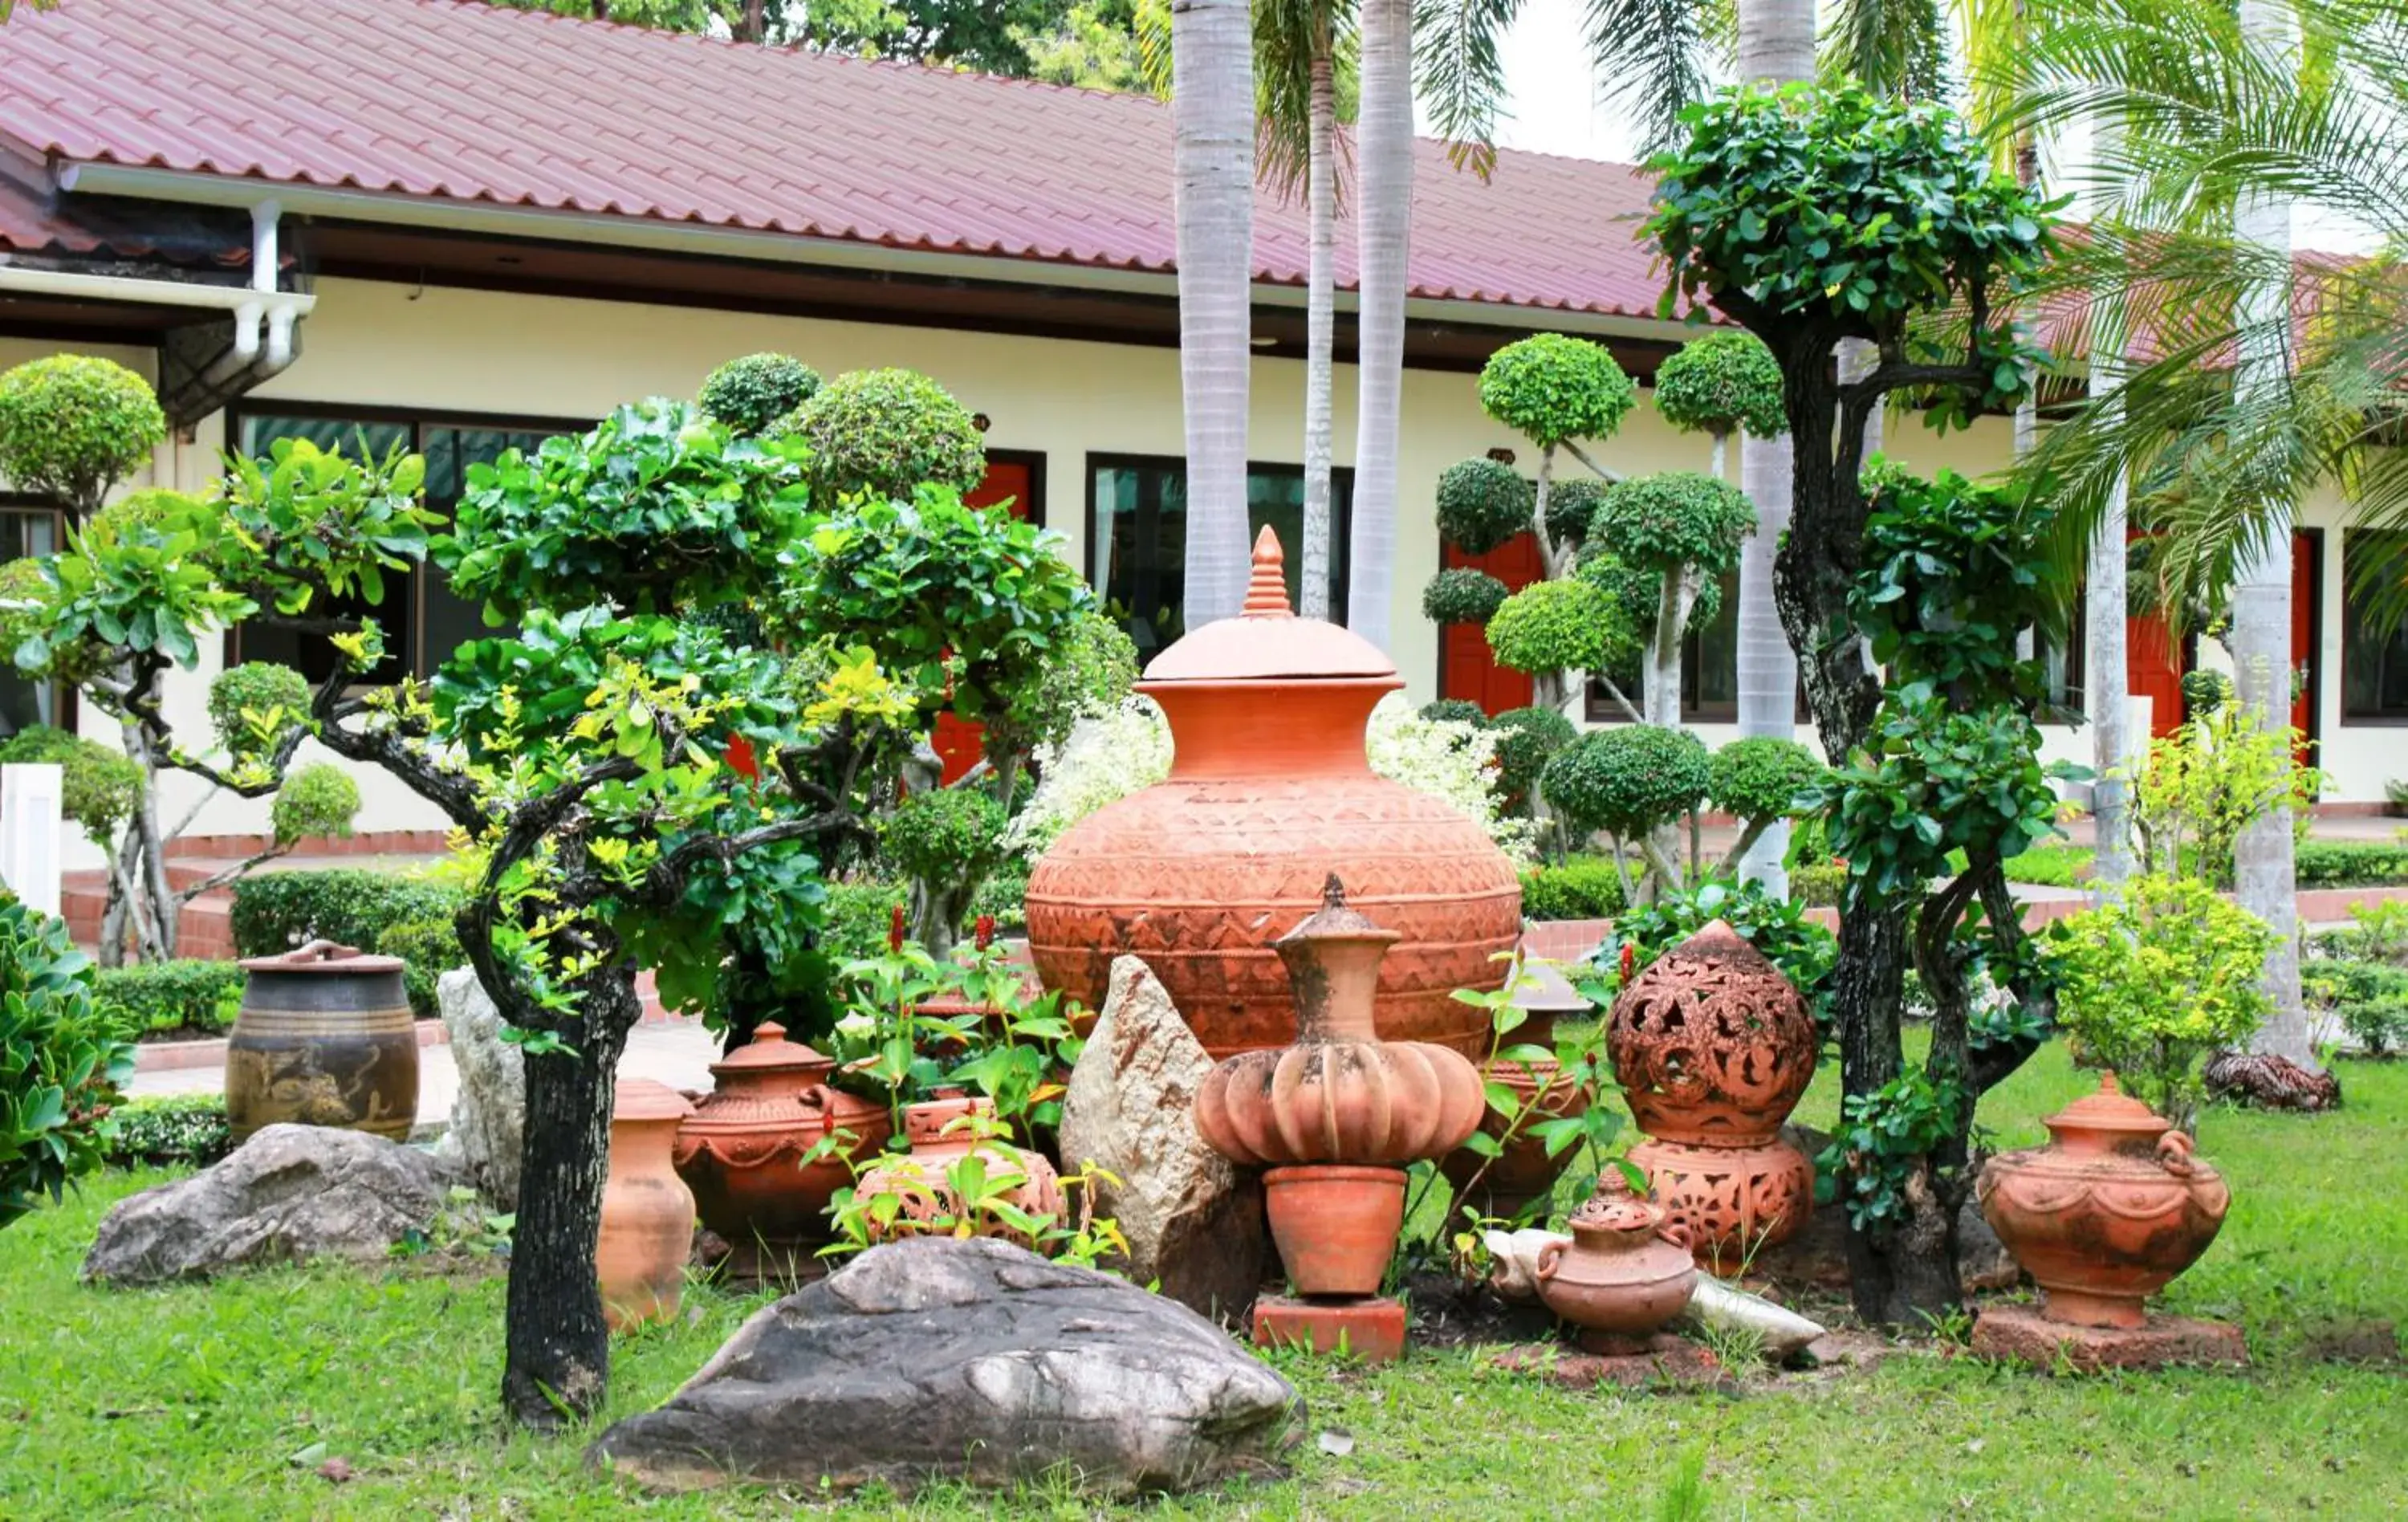 Deluxe Bungalow with Garden View in Thai Garden Resort